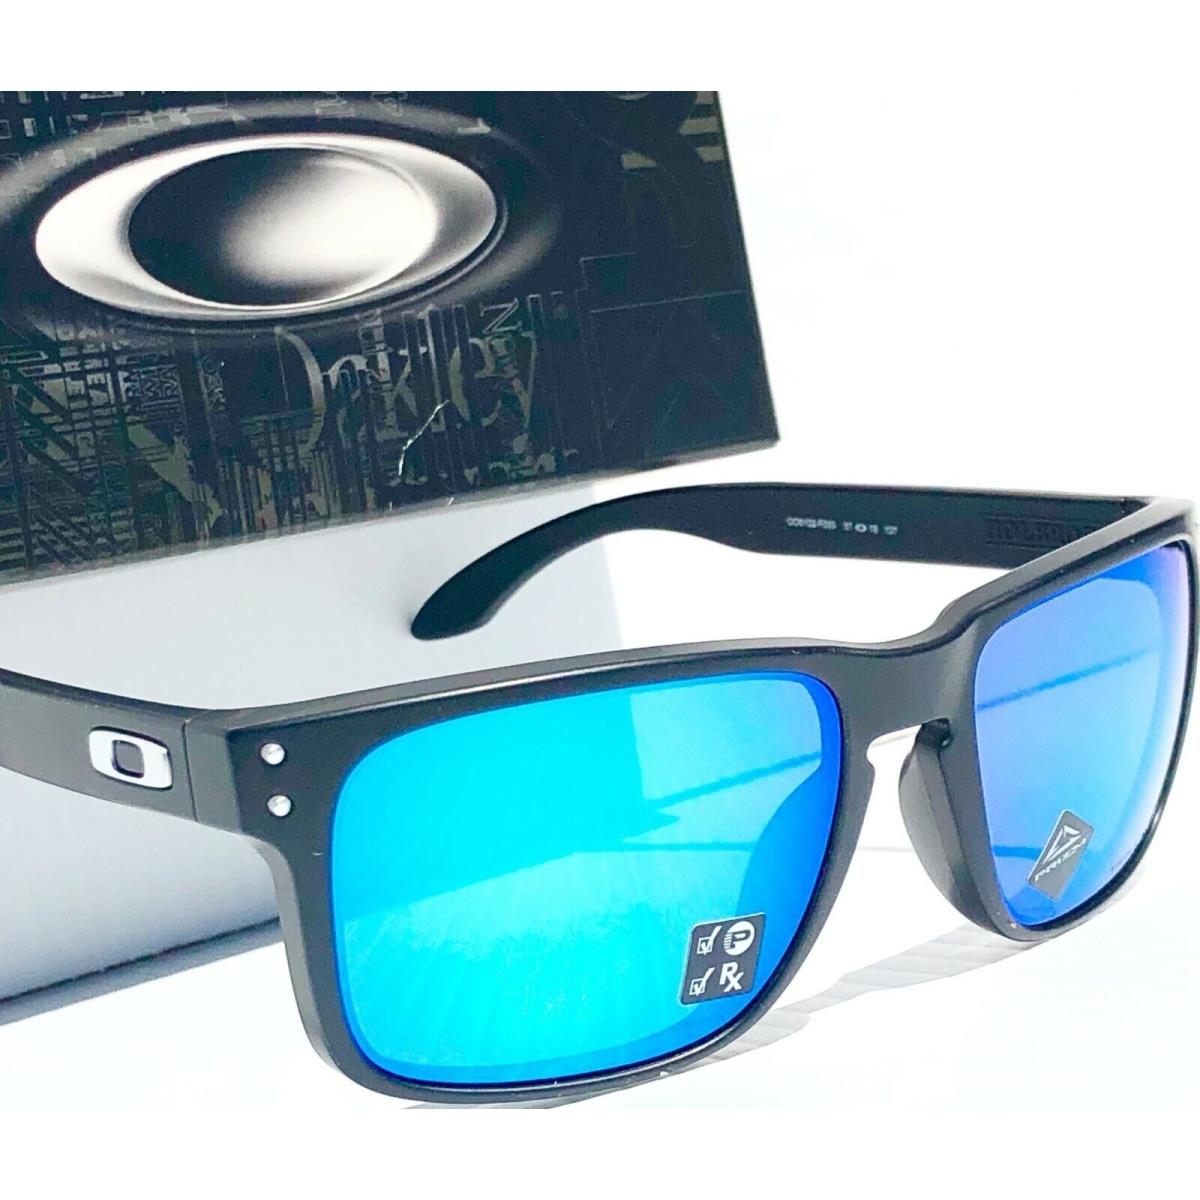 Oakley sunglasses Holbrook - Black Frame, Blue Lens 2